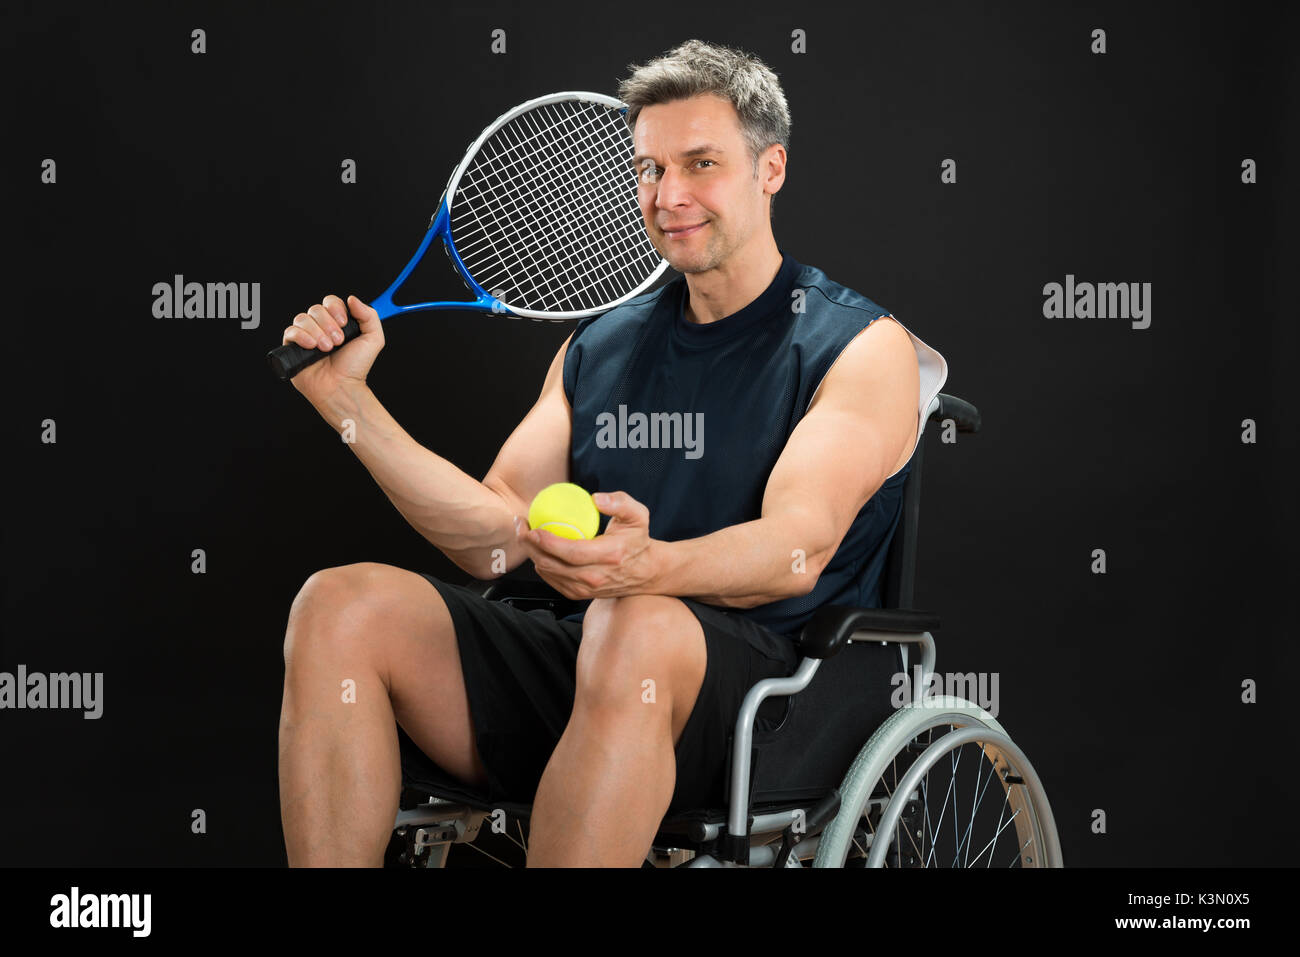 Behinderte Menschen im Rollstuhl mit Schläger und Ball Stockfoto